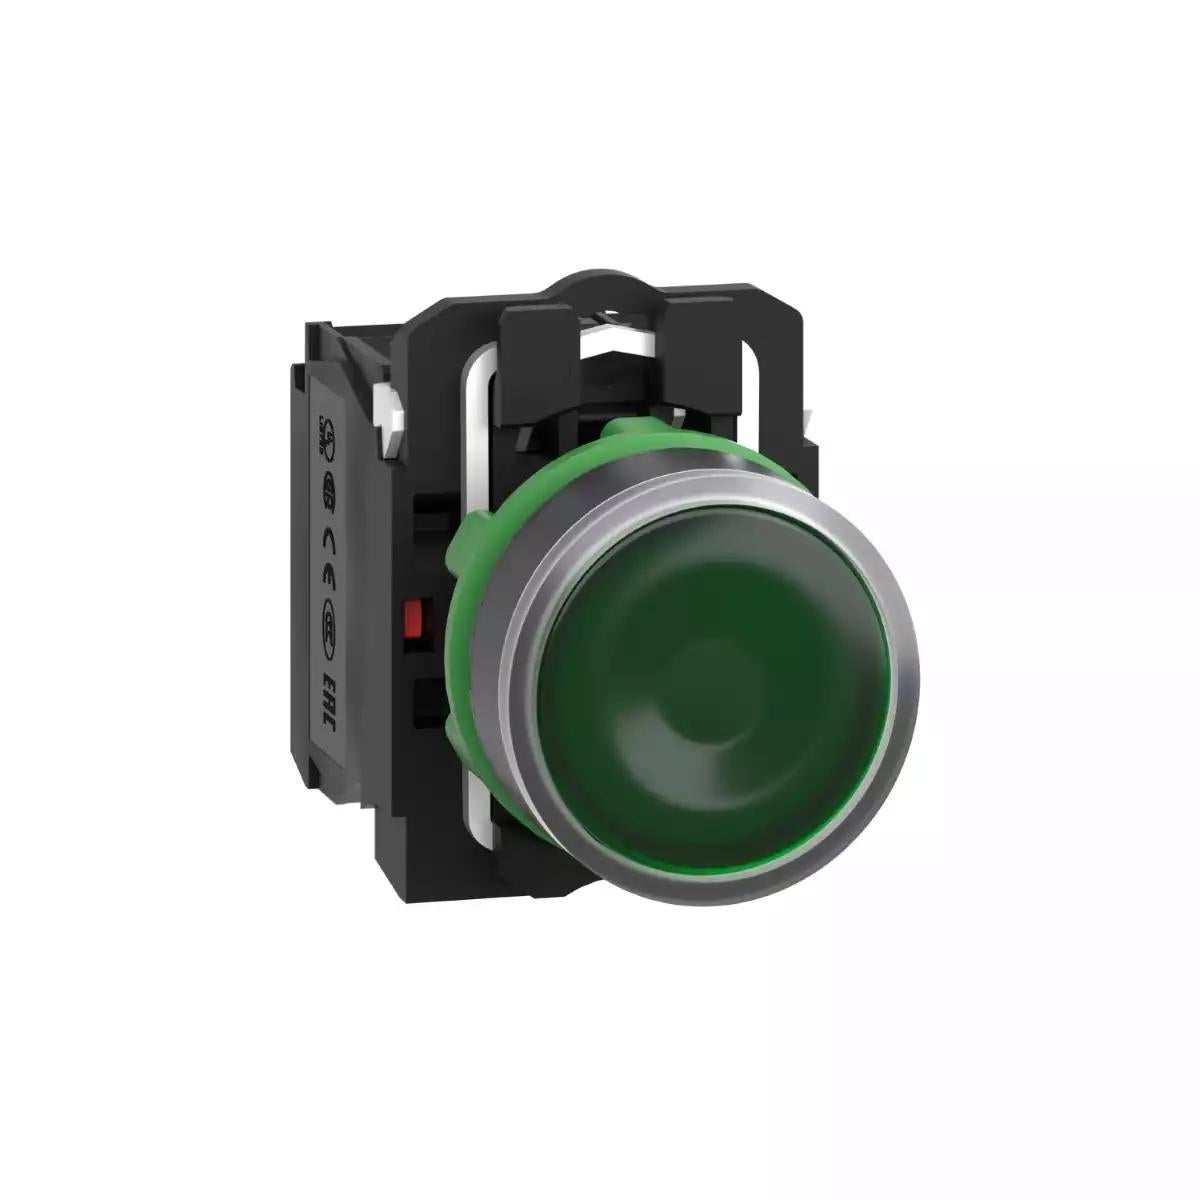 Illuminated push button, Harmony XB5, plastic, green flush, 22mm, universal LED, plain lens, 1NO + 1NC, 24V AC DC